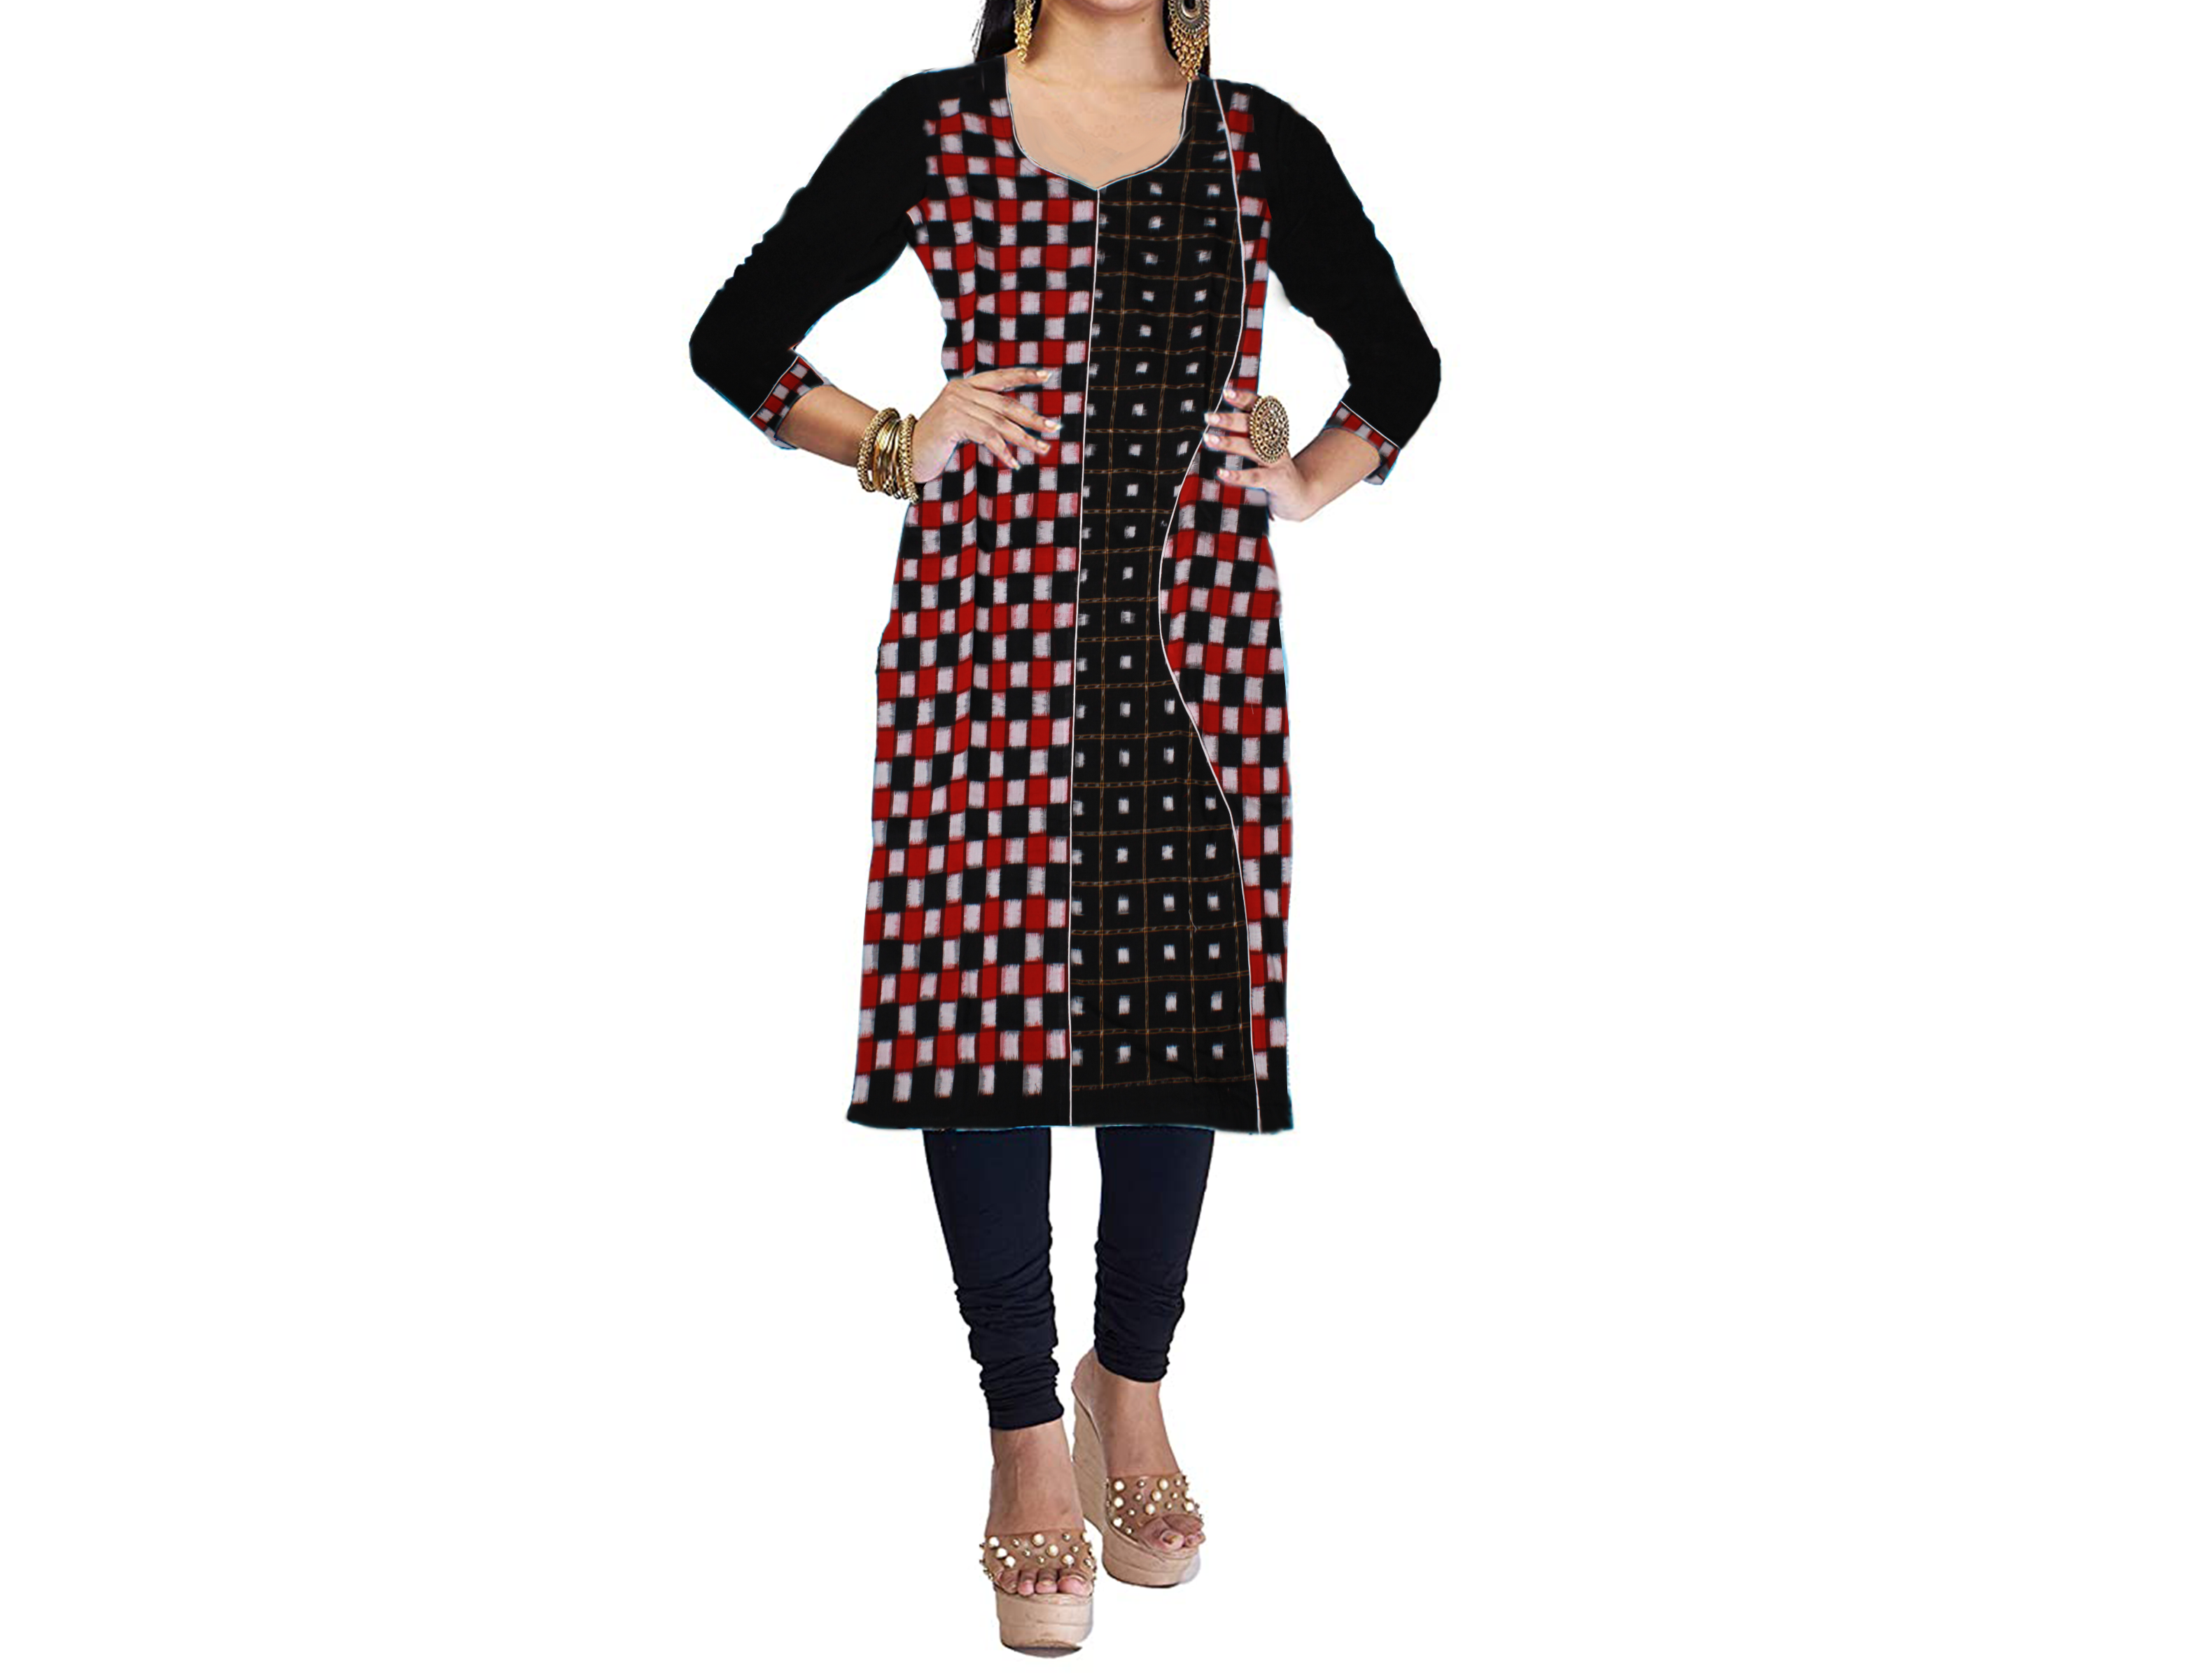 Find Pure cotton sambalpuri kurti for women stylish by Sombaby near me |  Sambalpur, Sambalpur, Odisha | Anar B2B Business App